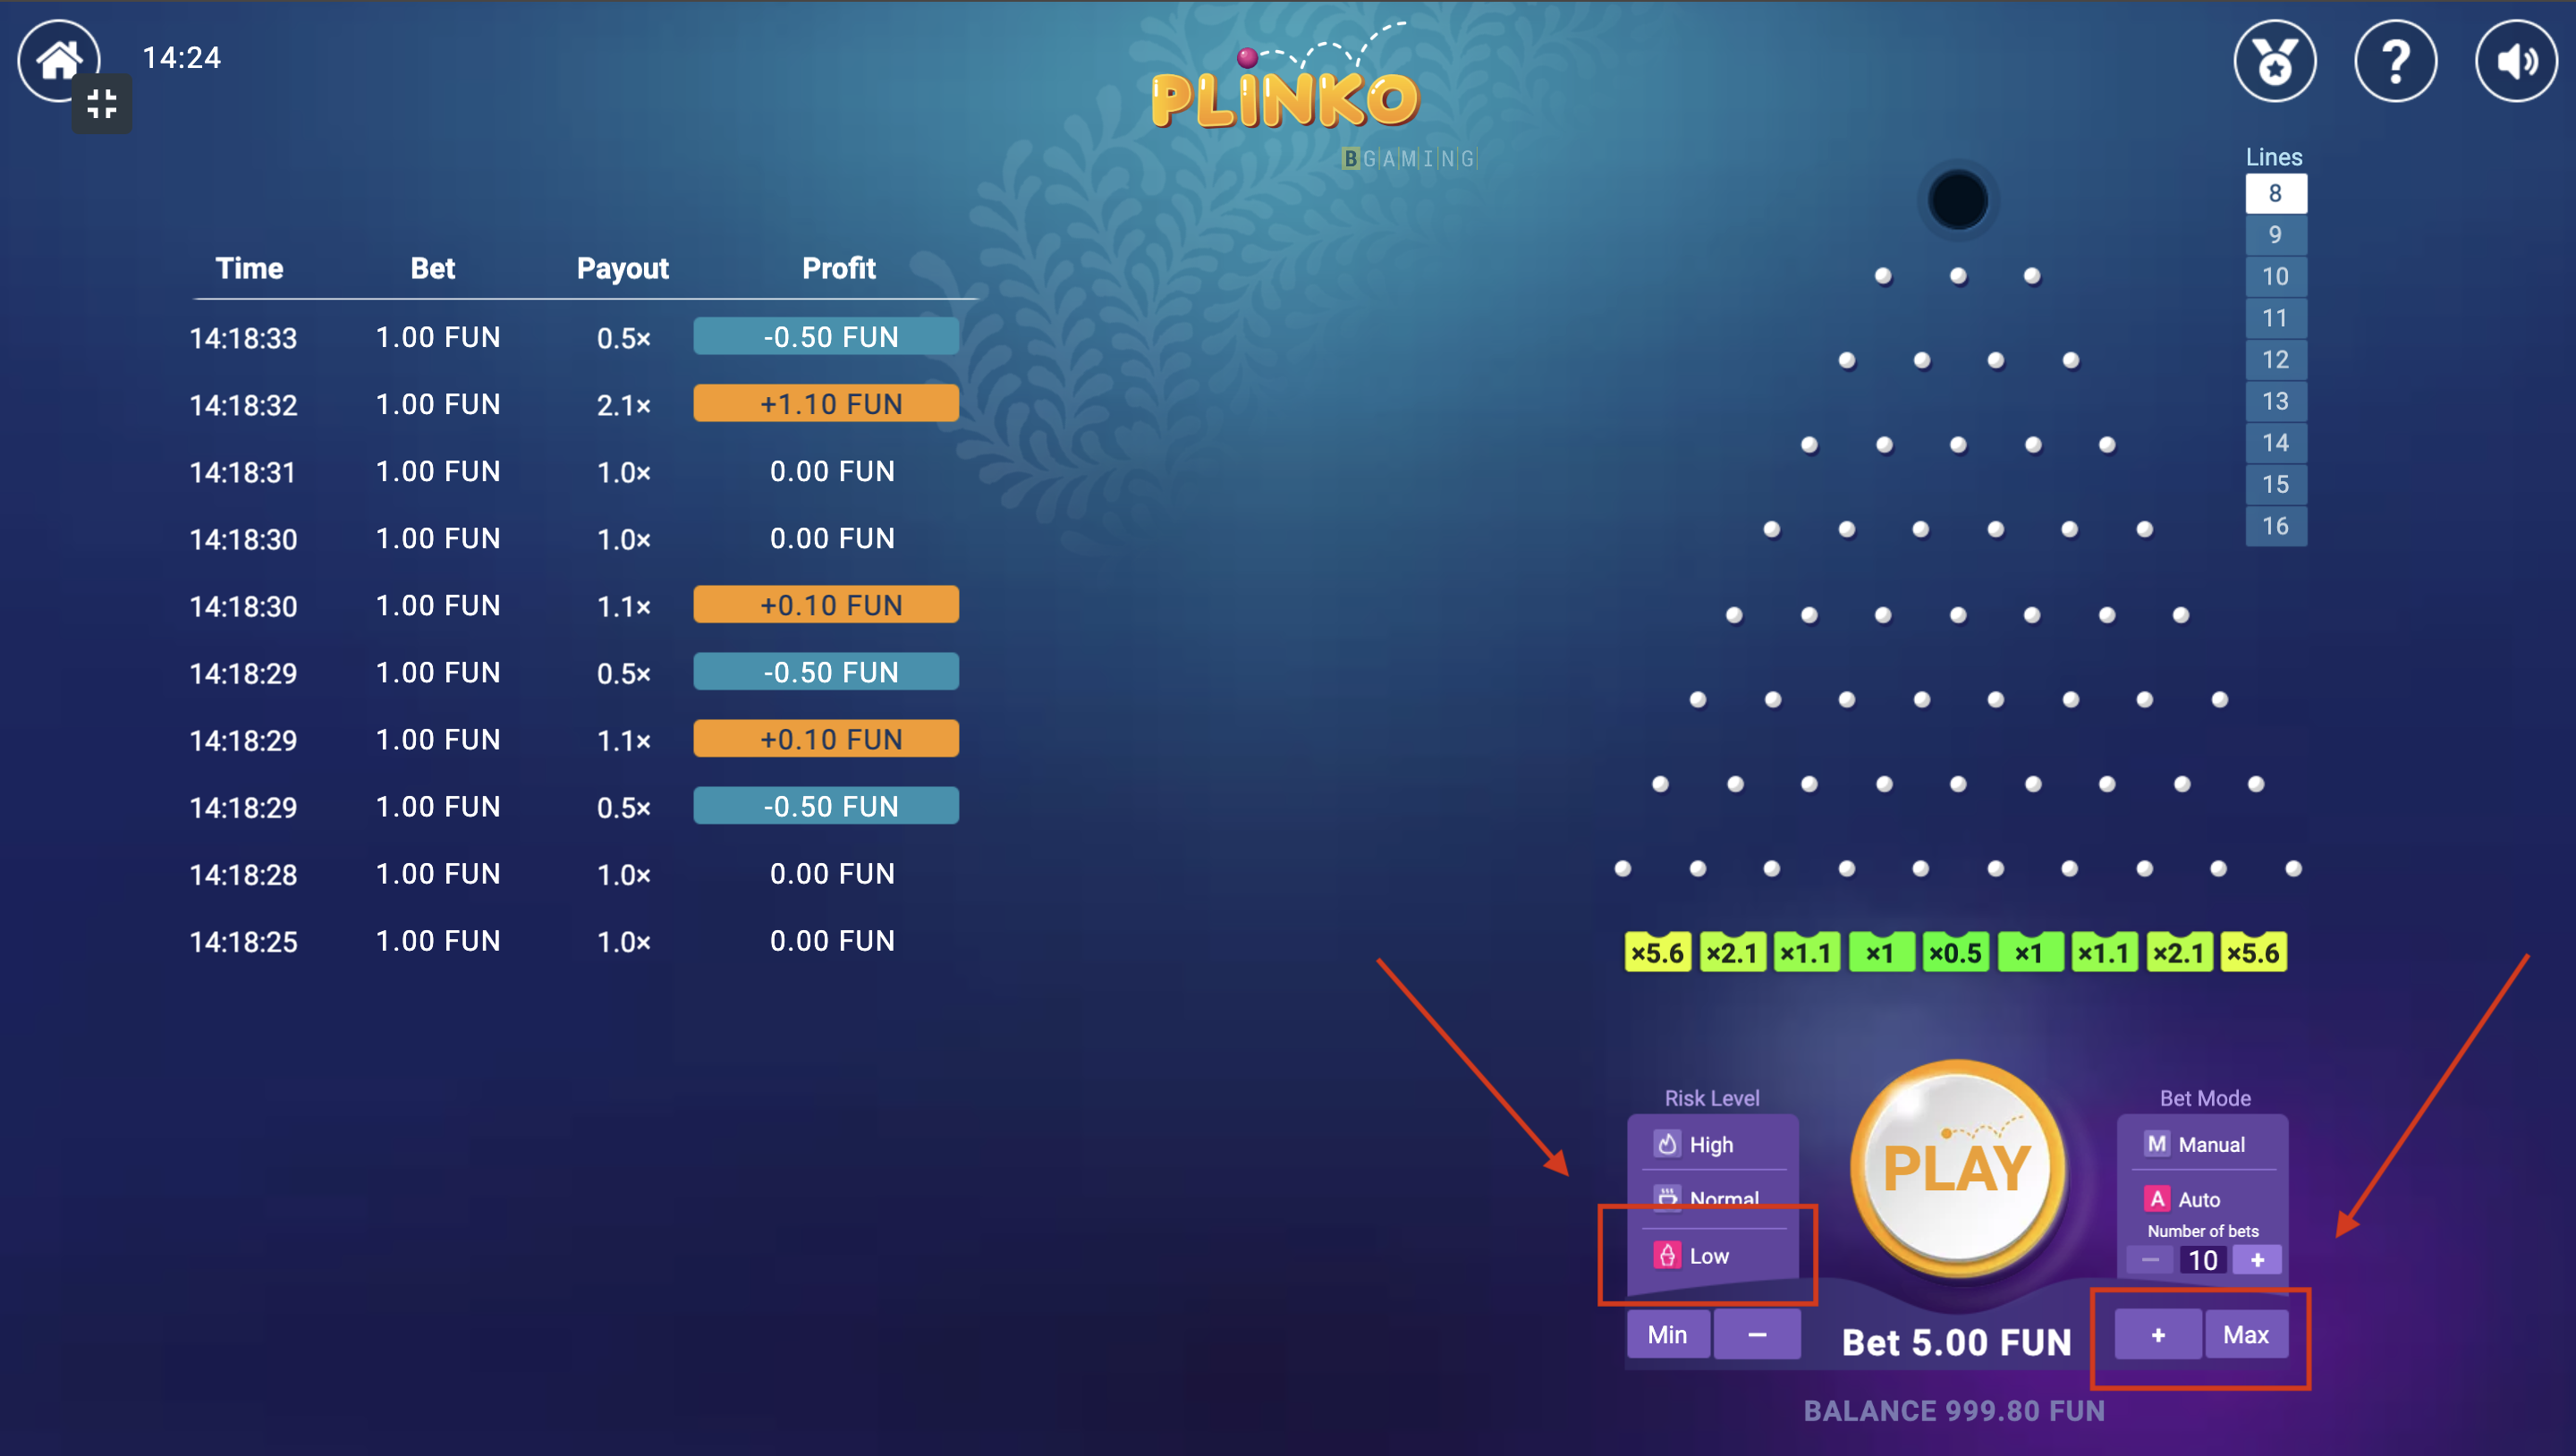 Jogo Plinko on-line | Qual é a estratégia por trás das apostas altas e do risco baixo?